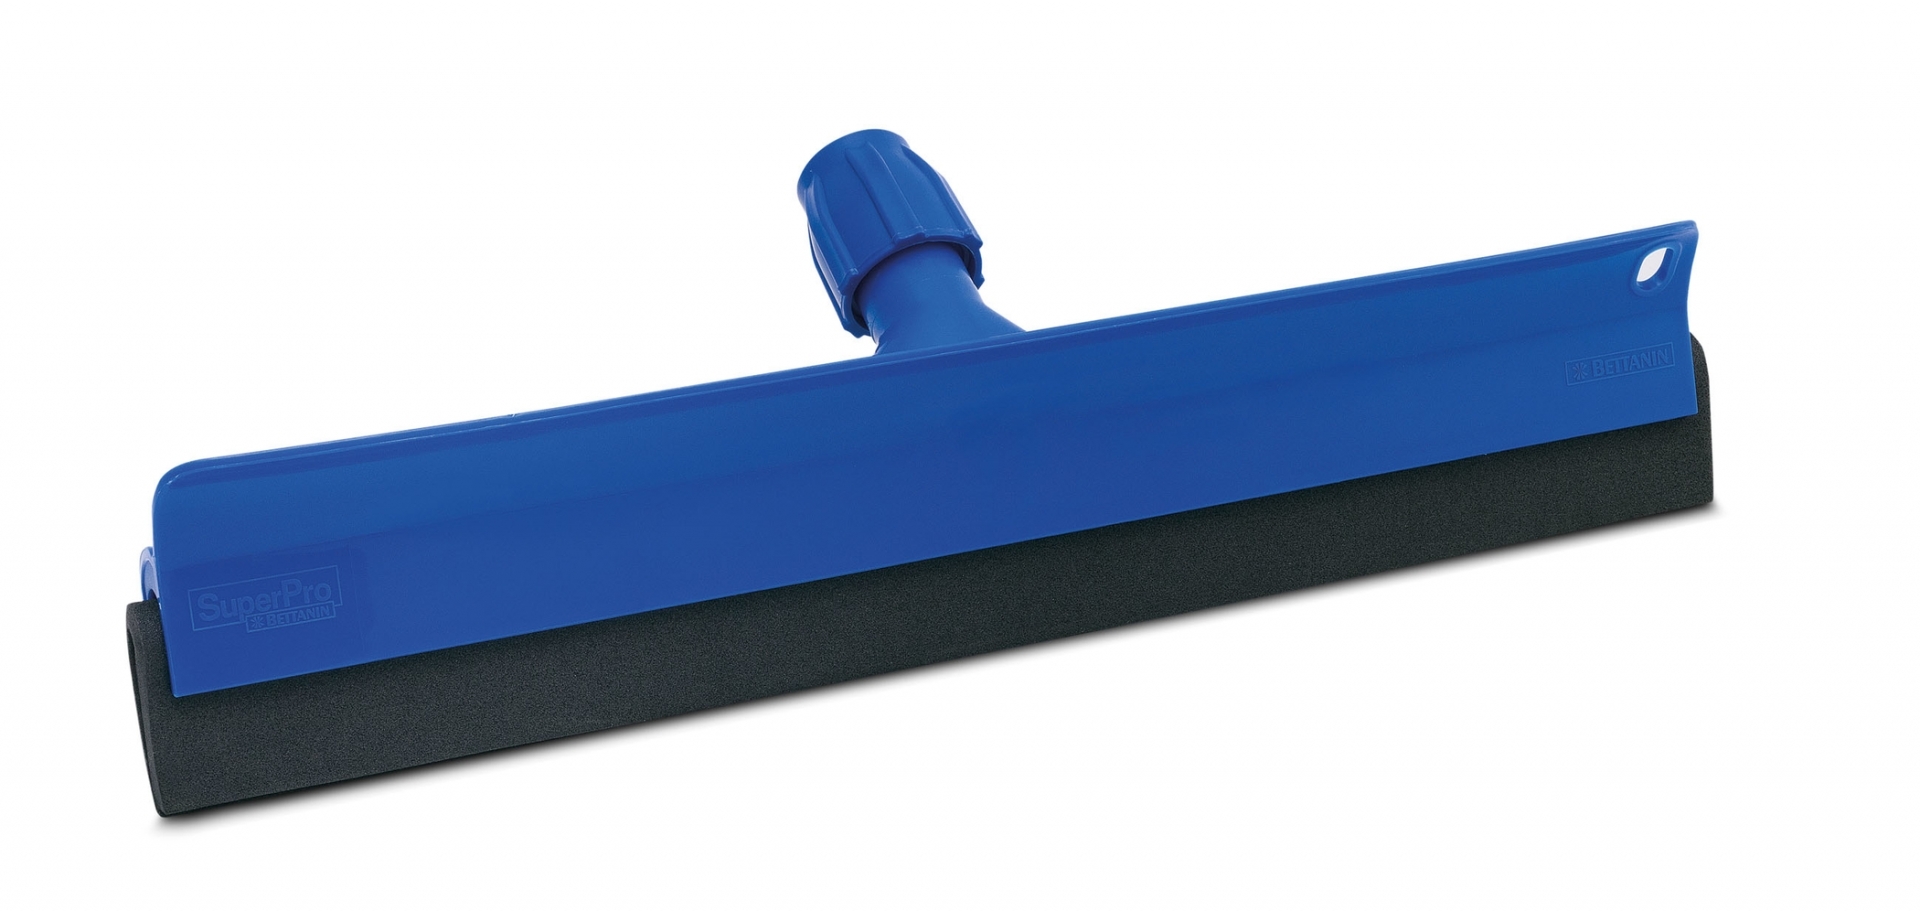 Rodo plastico duplo 45 centimetros azul sem cabo SP9056AZ/SP9157 superpro